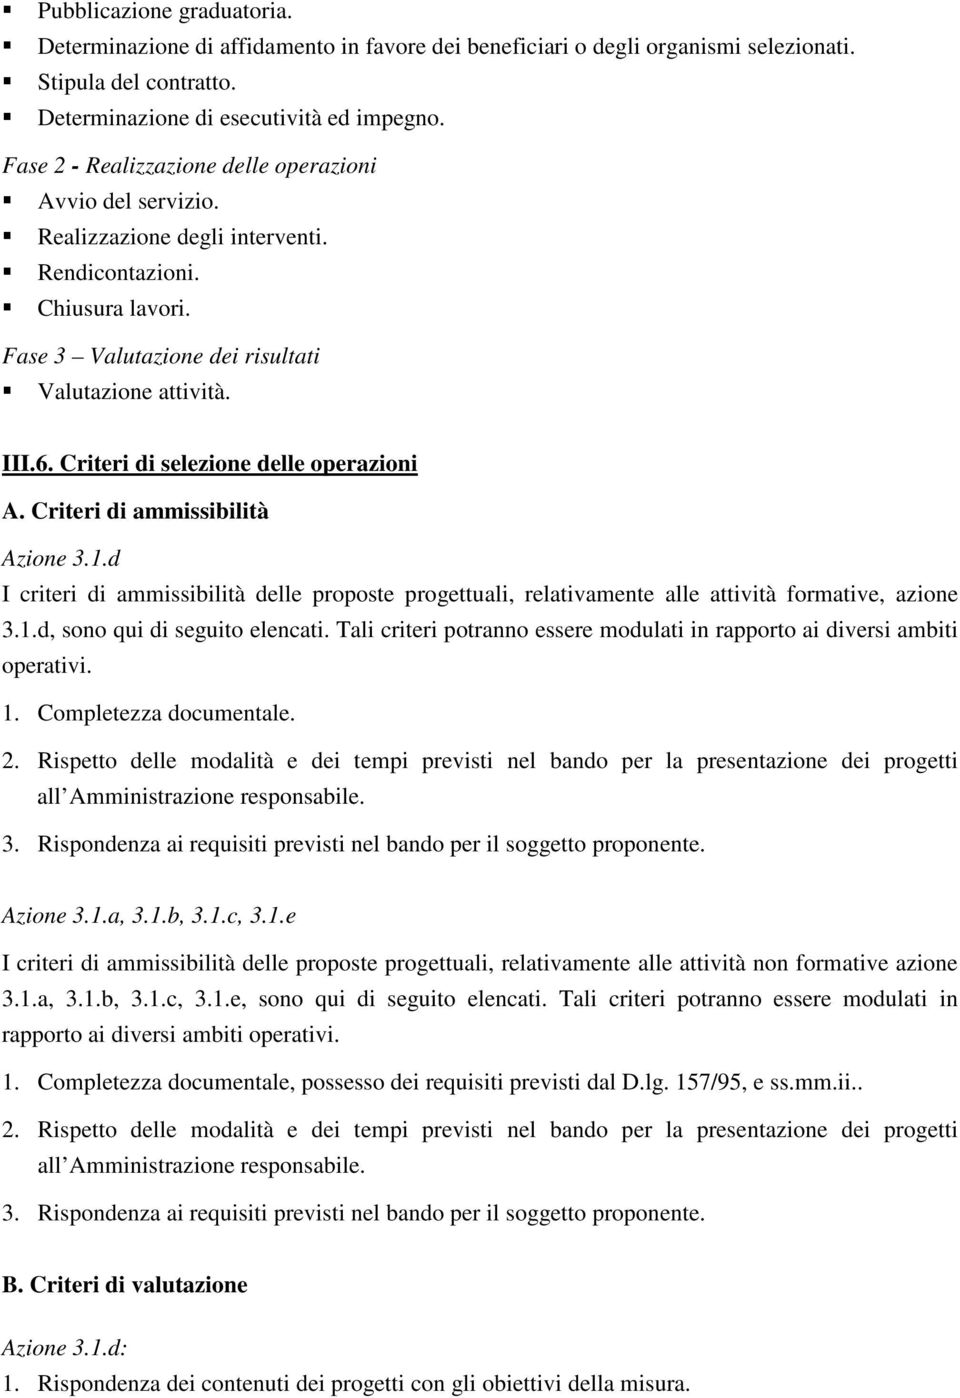 Criteri di selezione delle operazioni A. Criteri di ammissibilità Azione 3.1.d I criteri di ammissibilità delle proposte progettuali, relativamente alle attività formative, azione 3.1.d, sono qui di seguito elencati.